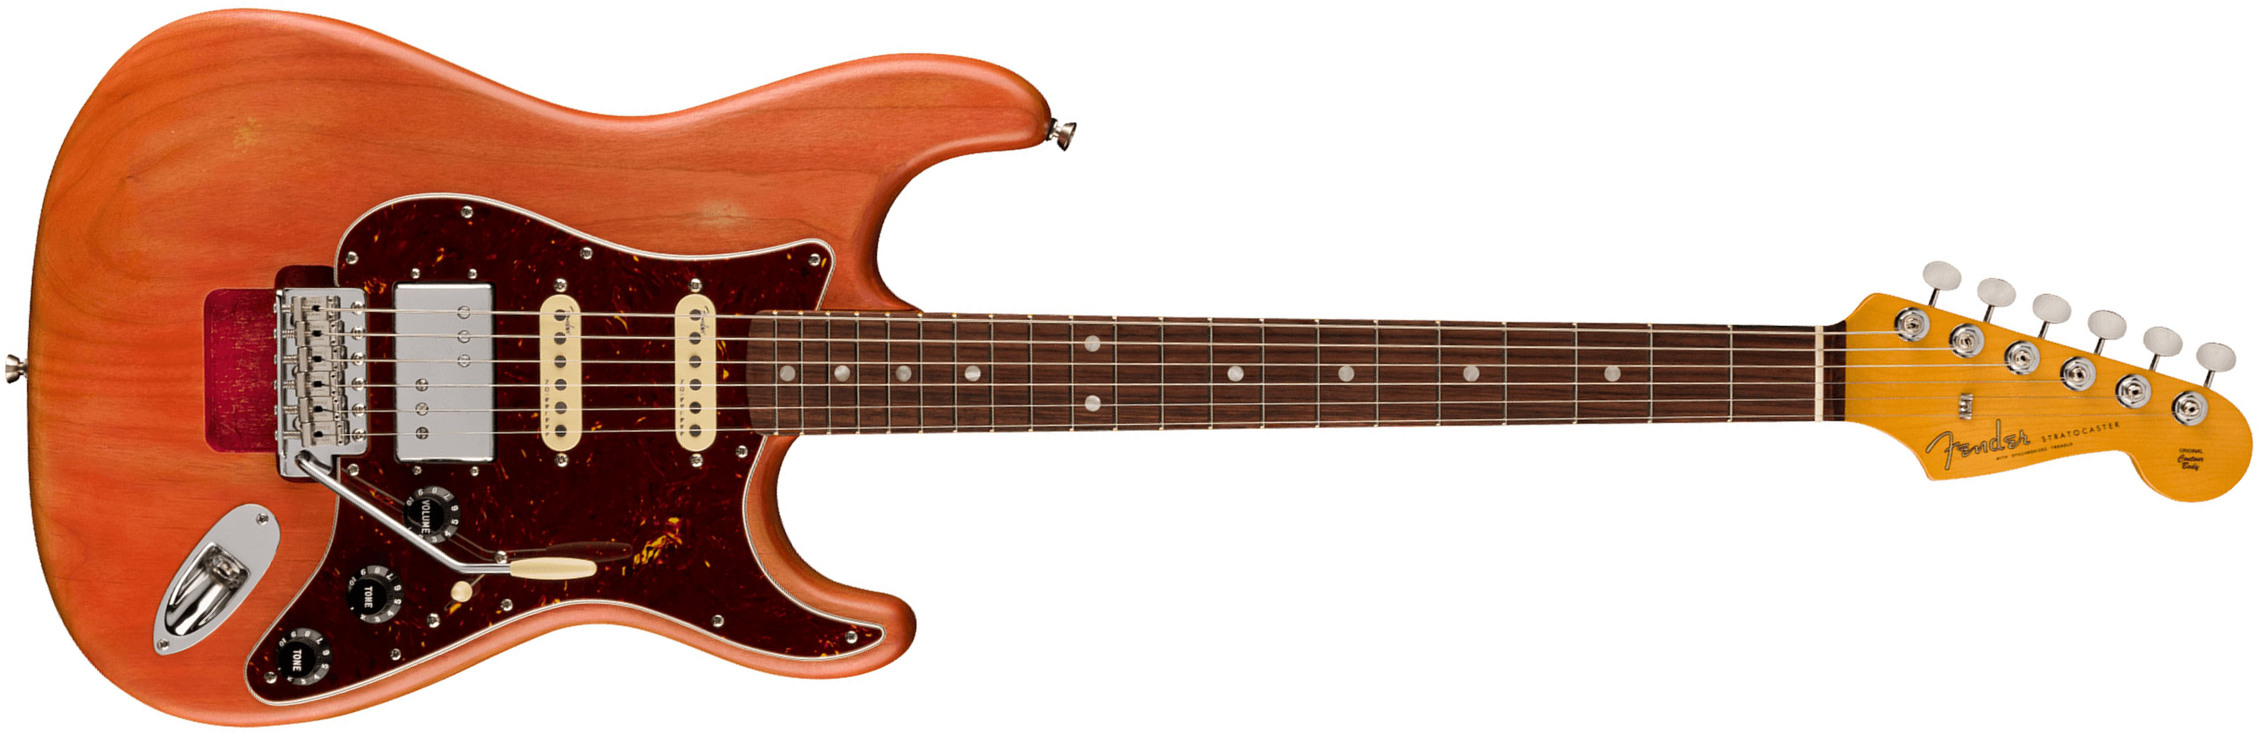 Fender Michael Landau Strat Coma Stories Usa Signature Hss Trem Rw - Coma Red - Elektrische gitaar in Str-vorm - Main picture